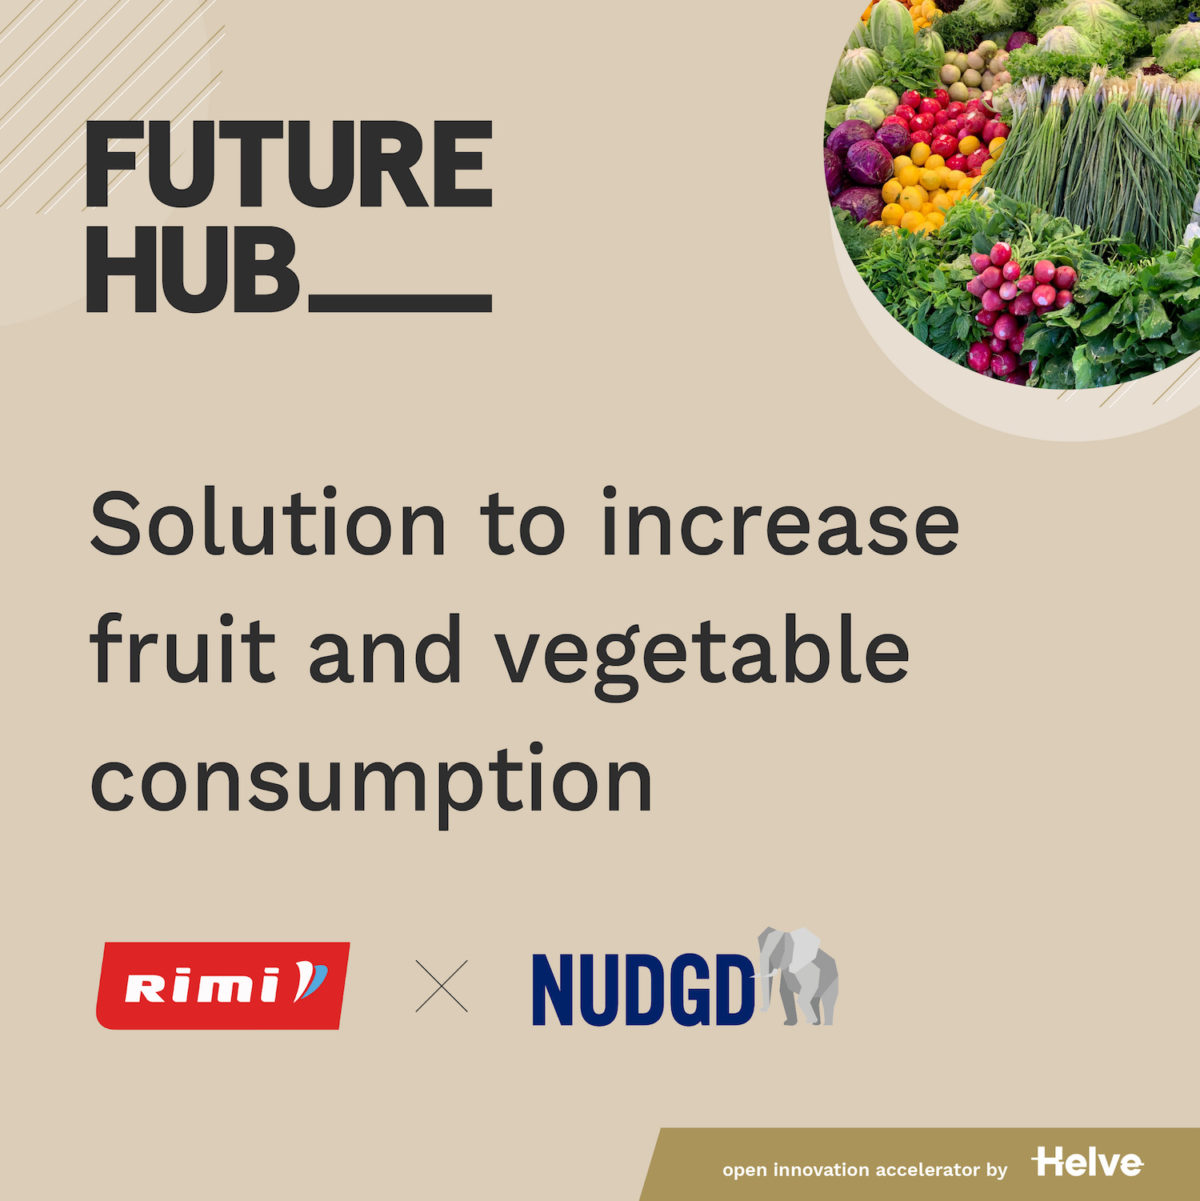 Featured image for: Nudging för att få fler att handla mer frukt och grönt